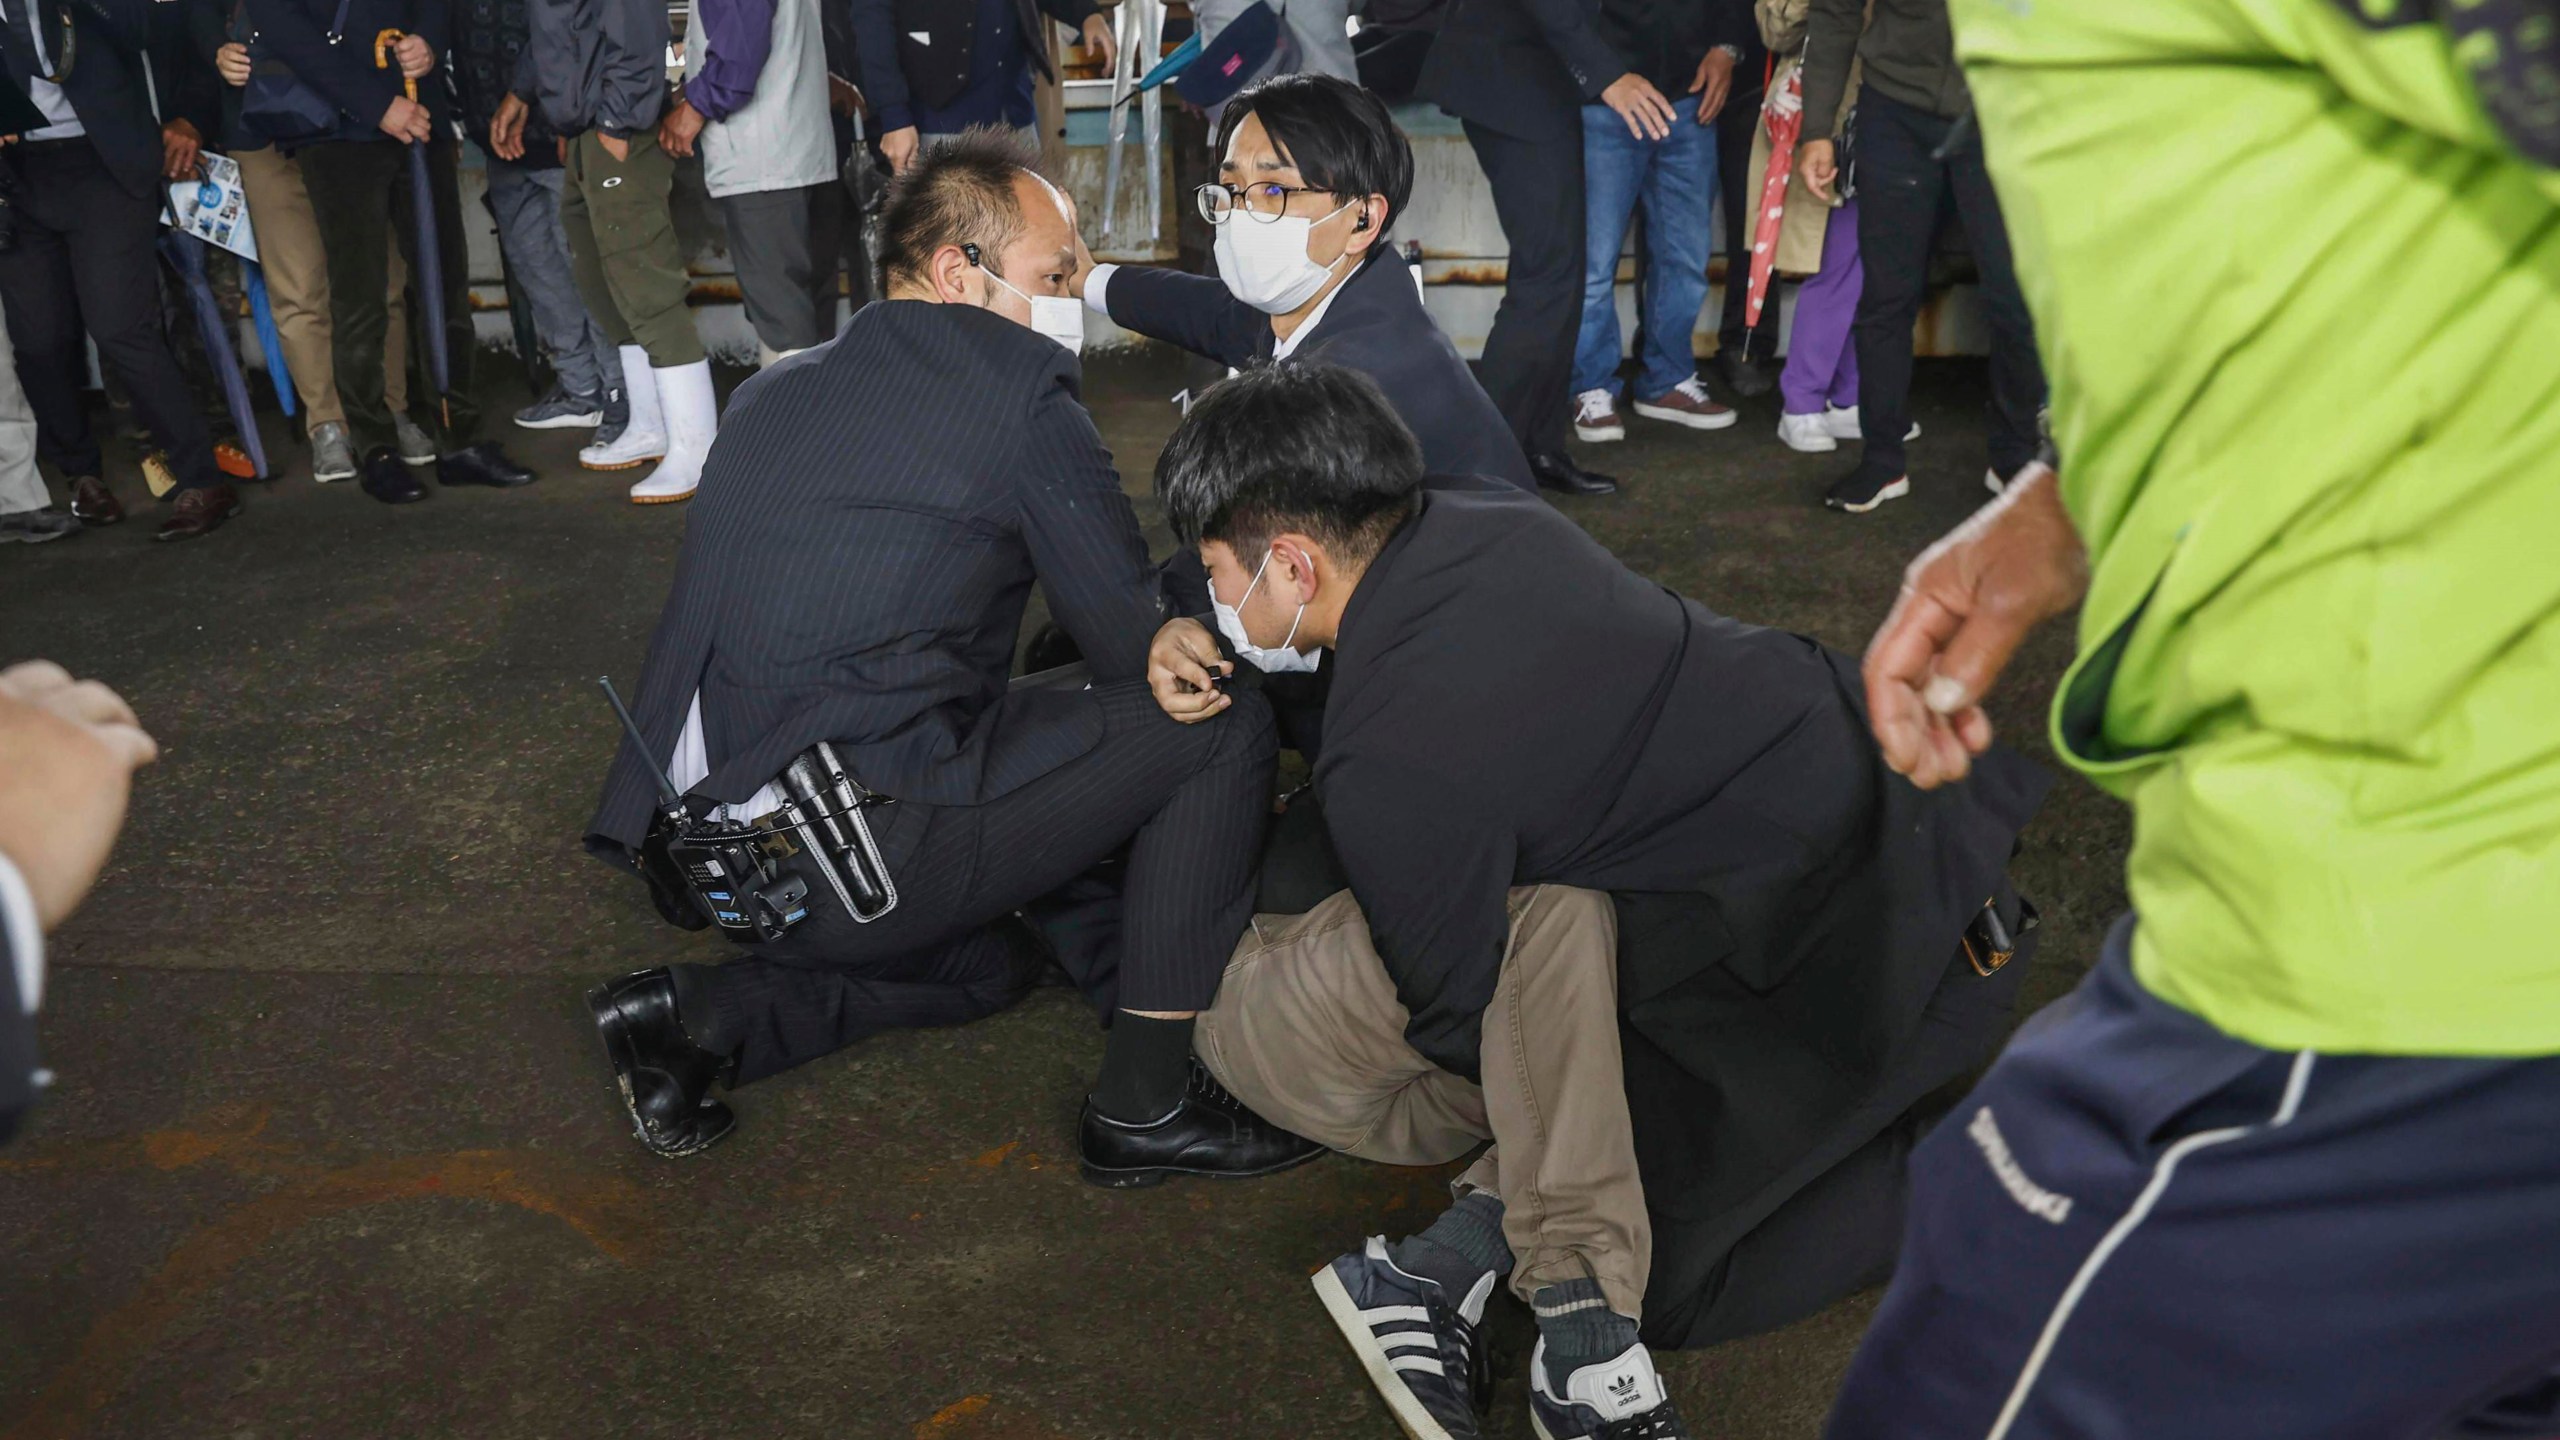 2023年4月15日星期六，在日本西部和歌山的一个港口，一名男子在地上扔了一枚似乎是烟雾弹的东西，被抓获。日本NHK电视台星期六报道说，日本首相岸田文雄访问日本西部港口时，发生了巨大的爆炸，但是没有人员受伤。(共同社通过美联社)